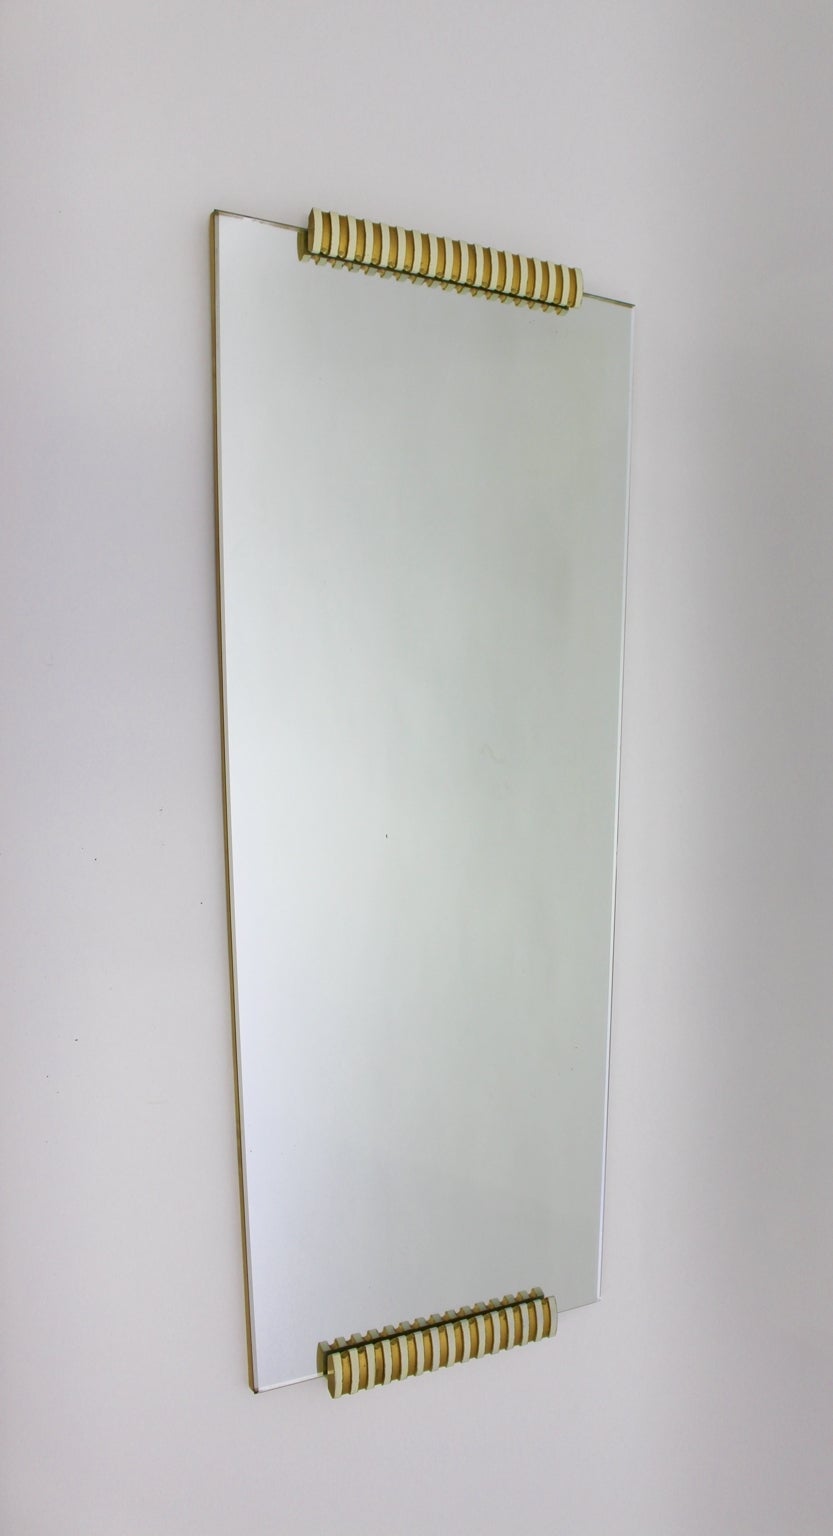 Miroir long ou mural de style moderne du milieu du siècle, très similaire à celui d'Osvaldo Borsani, en placage d'épicéa et d'érable et en verre miroir.
Le miroir en verre présente une belle patine miroir. Le miroir intégral ou mural présente deux